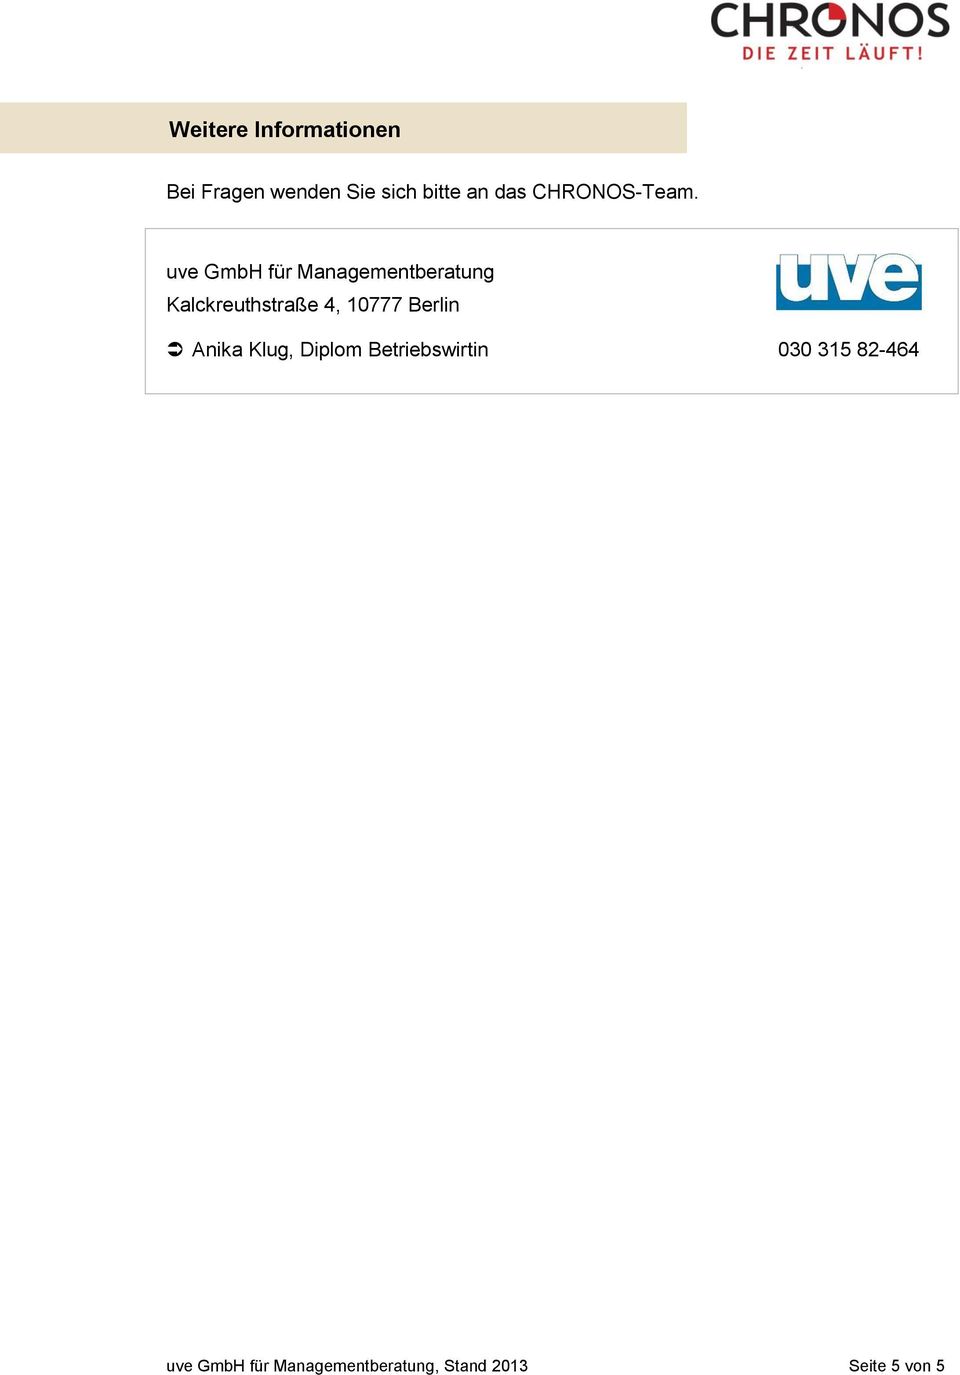 uve GmbH für Managementberatung Kalckreuthstraße 4, 10777